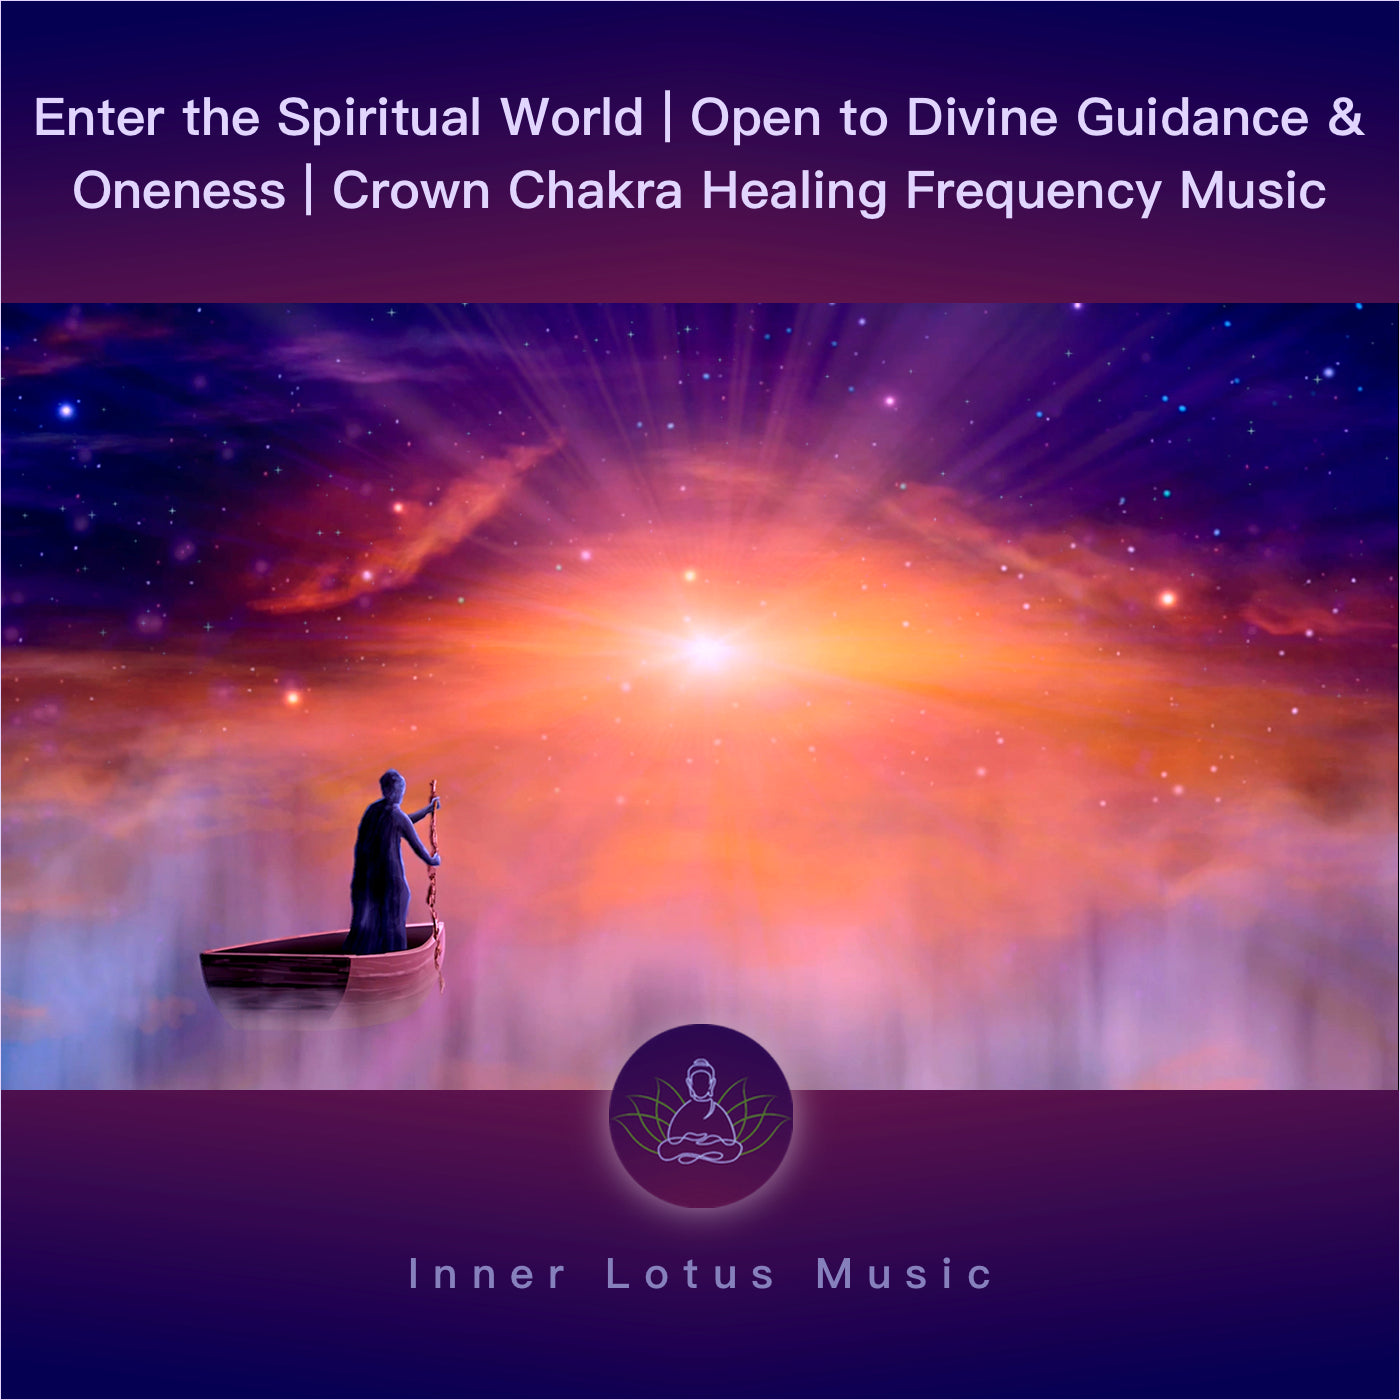 Entre dans le Monde Spirituel | Unité & Guidance Divine | Fréquence Guérison Chakra de la Couronne